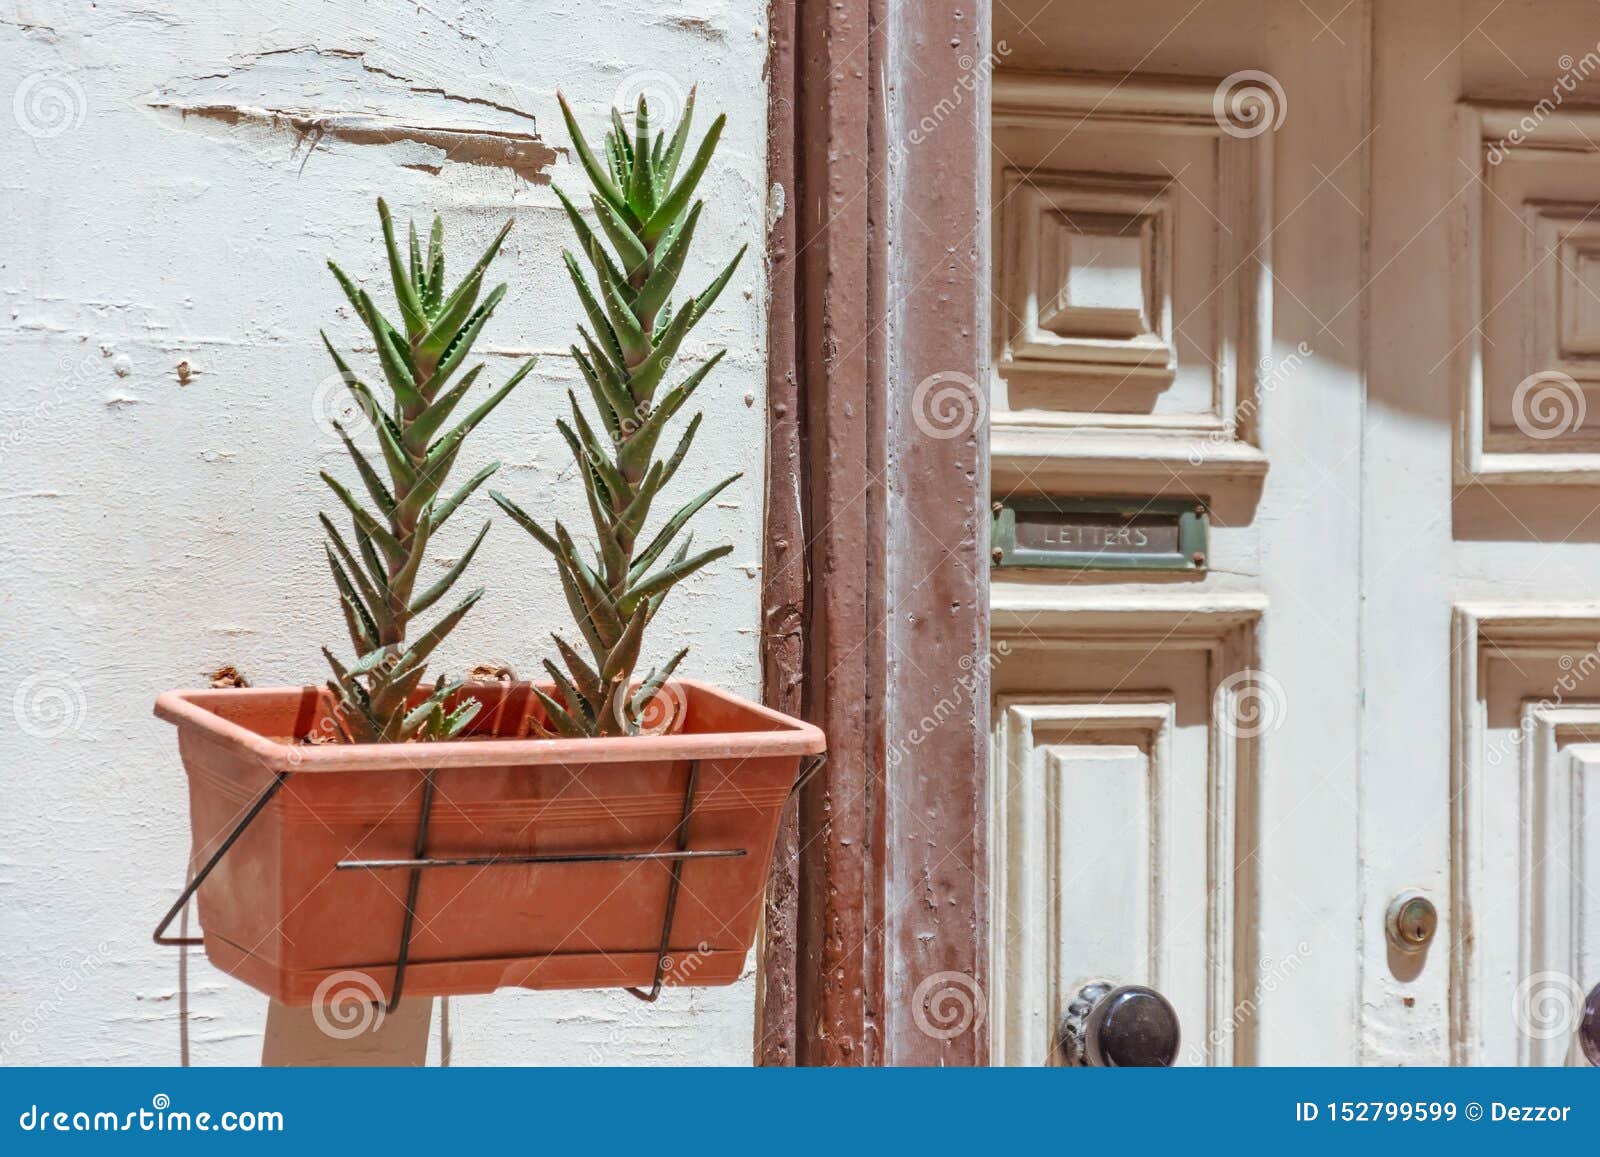 Aprobación lanzar Comerciante Pote Con Las Plantas De Los Succulents En La Puerta De La Entrada a La Casa  Con Una Ranura Para Recibir Letras Y El Correo En La Imagen de archivo -  Imagen